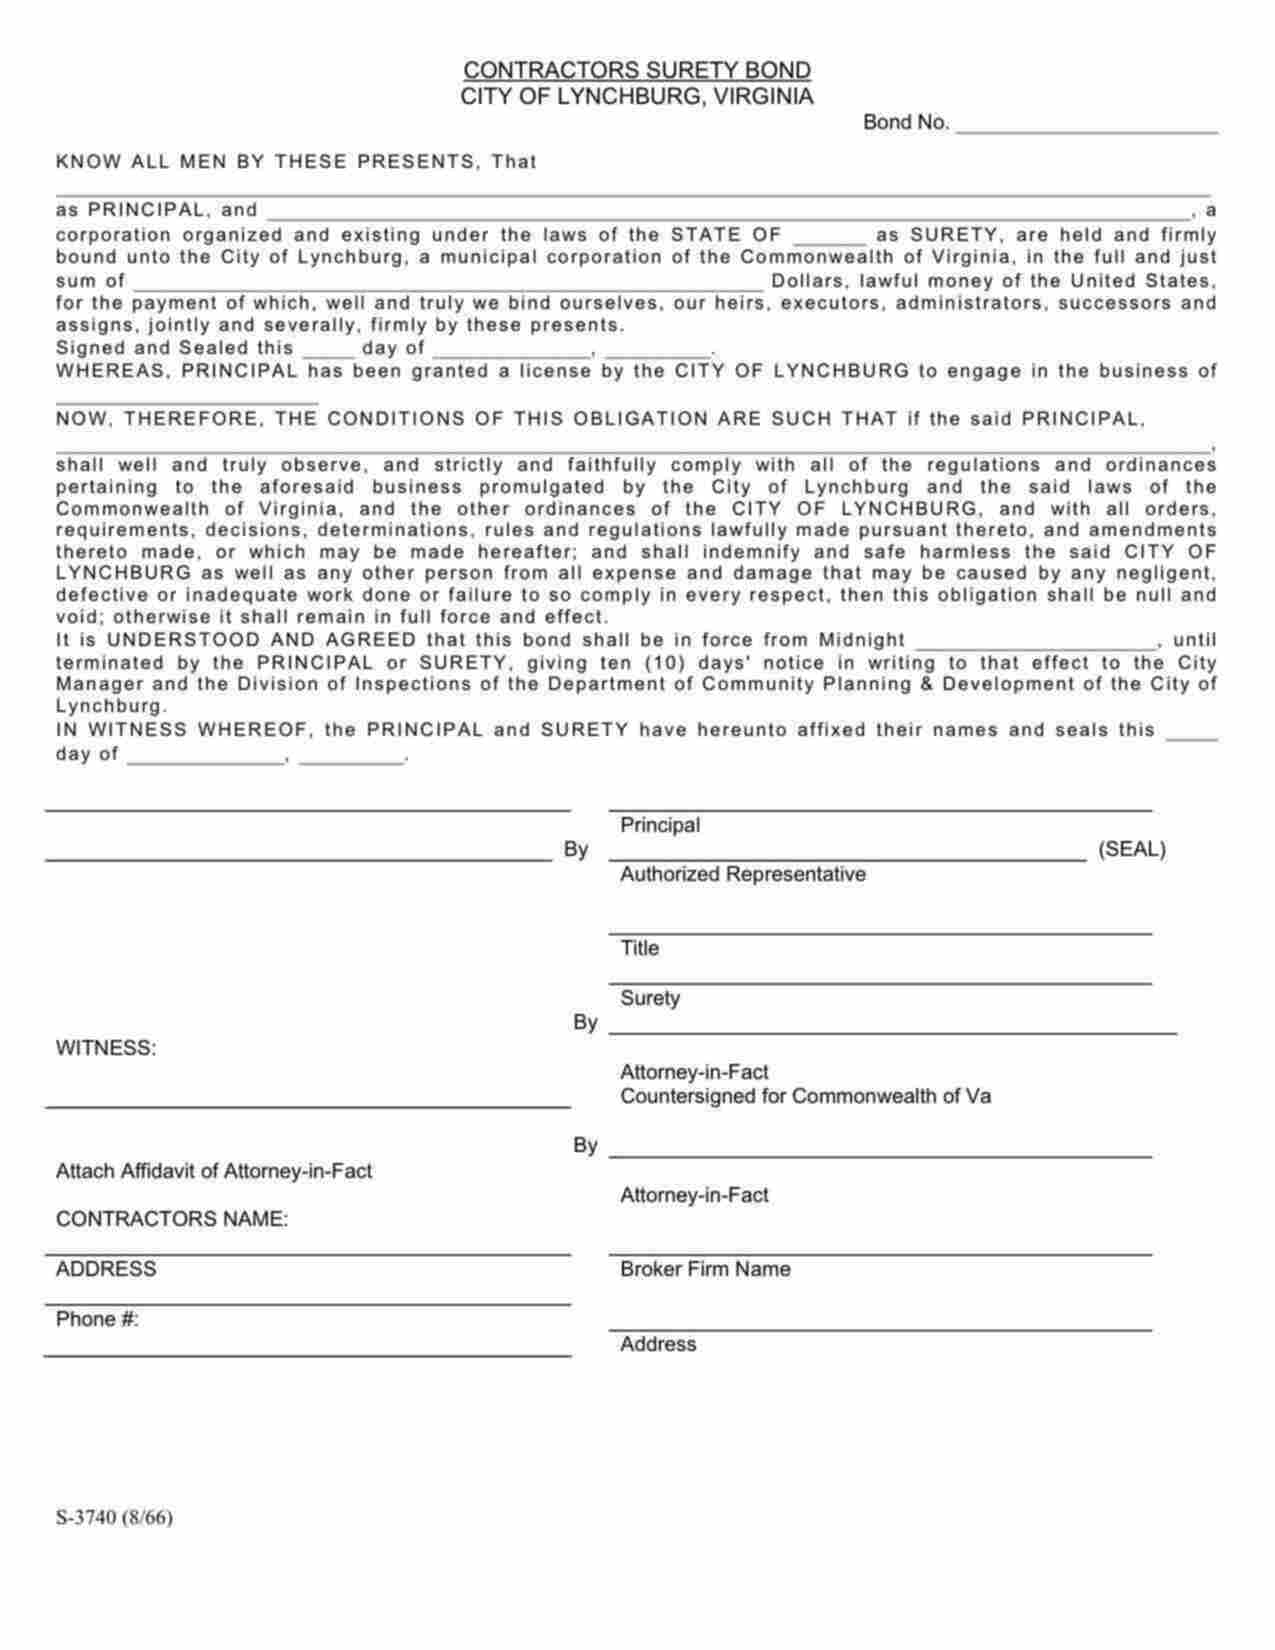 Virginia Contractors License Bond Form